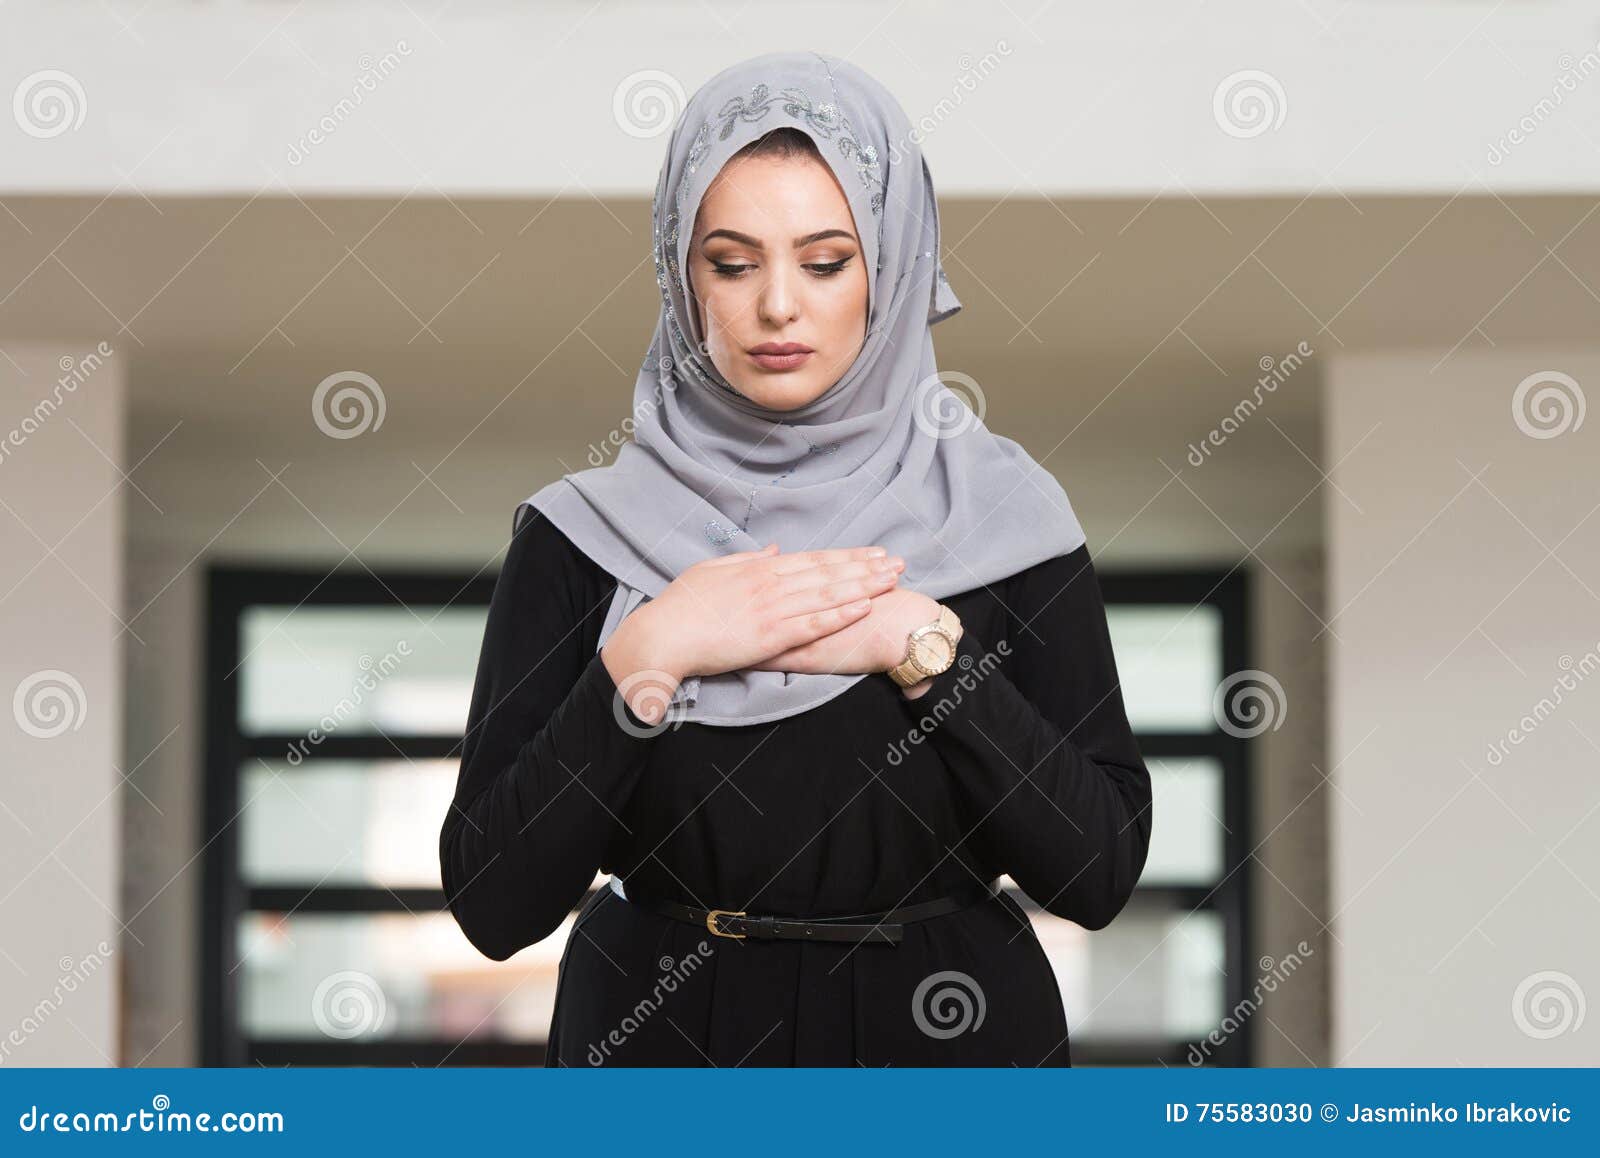 Говорить по мусульмански. Молящая женщина мусульманка. Мусульманка молится фото. Молитва для женщин мусульманок. Фото женщины итальянки в мечети.